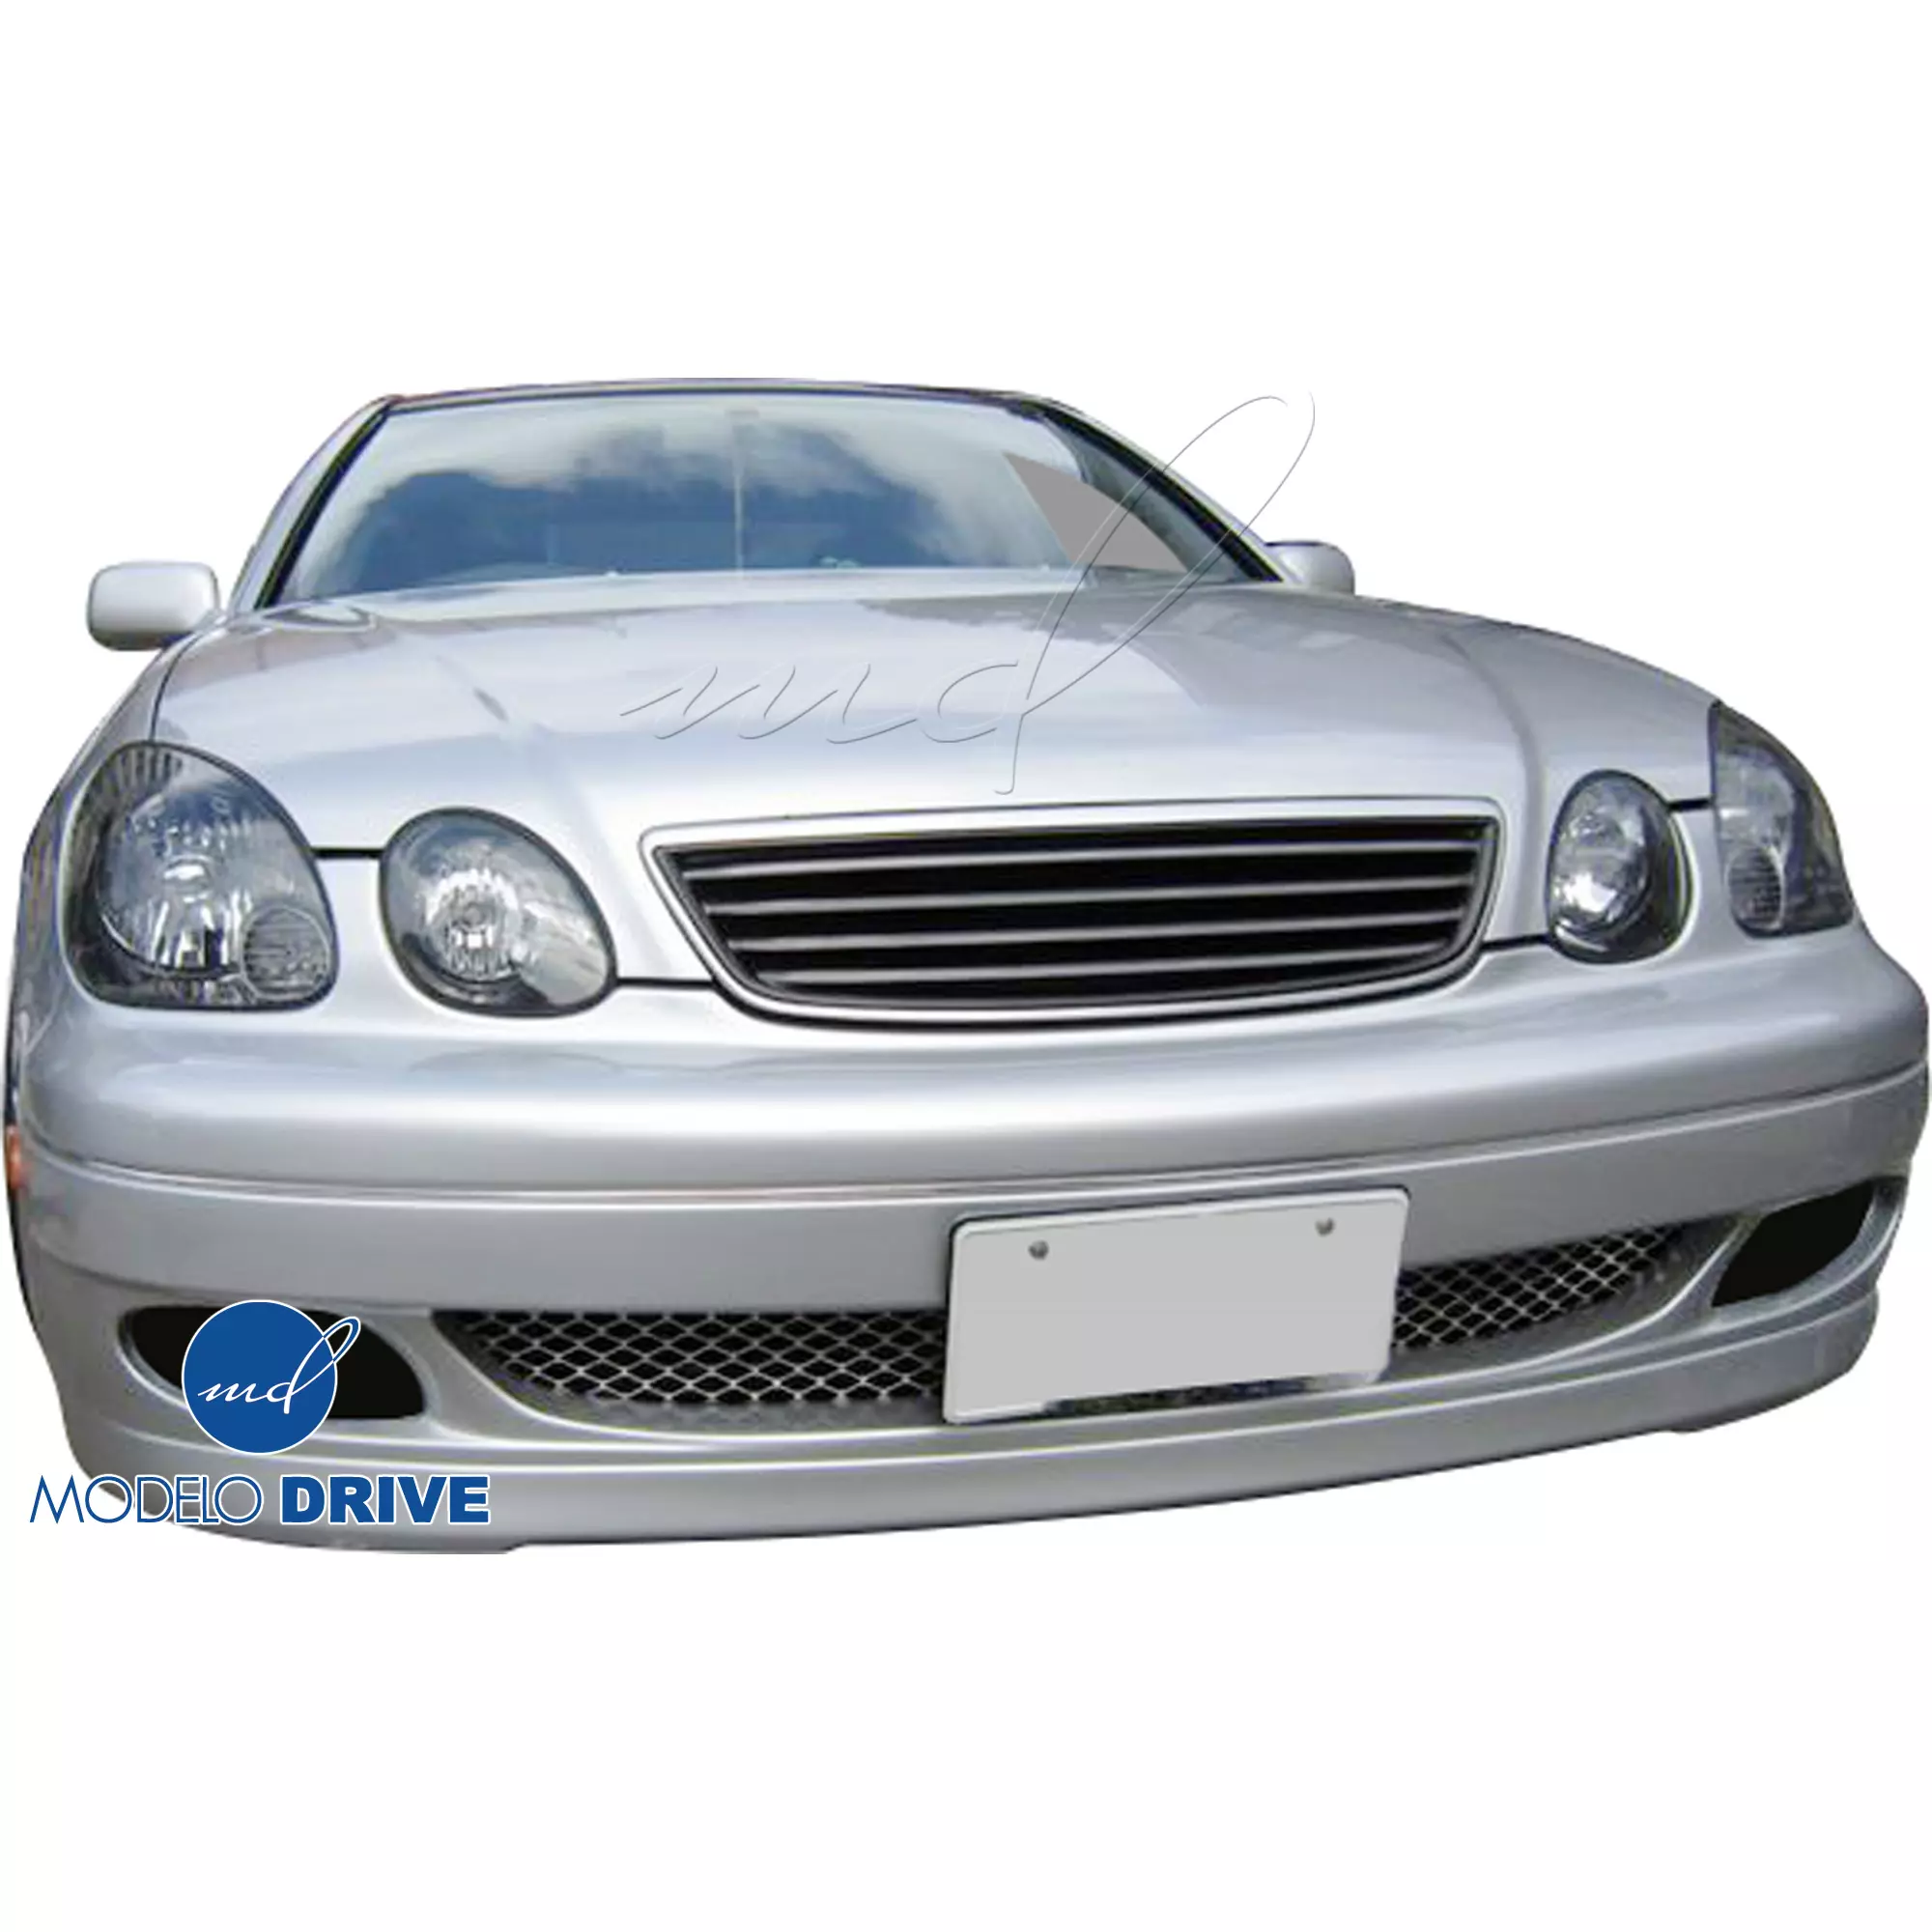 ModeloDrive FRP JUNT Front Bumper > Lexus GS Series GS400 GS300 1998-2005 - Image 3